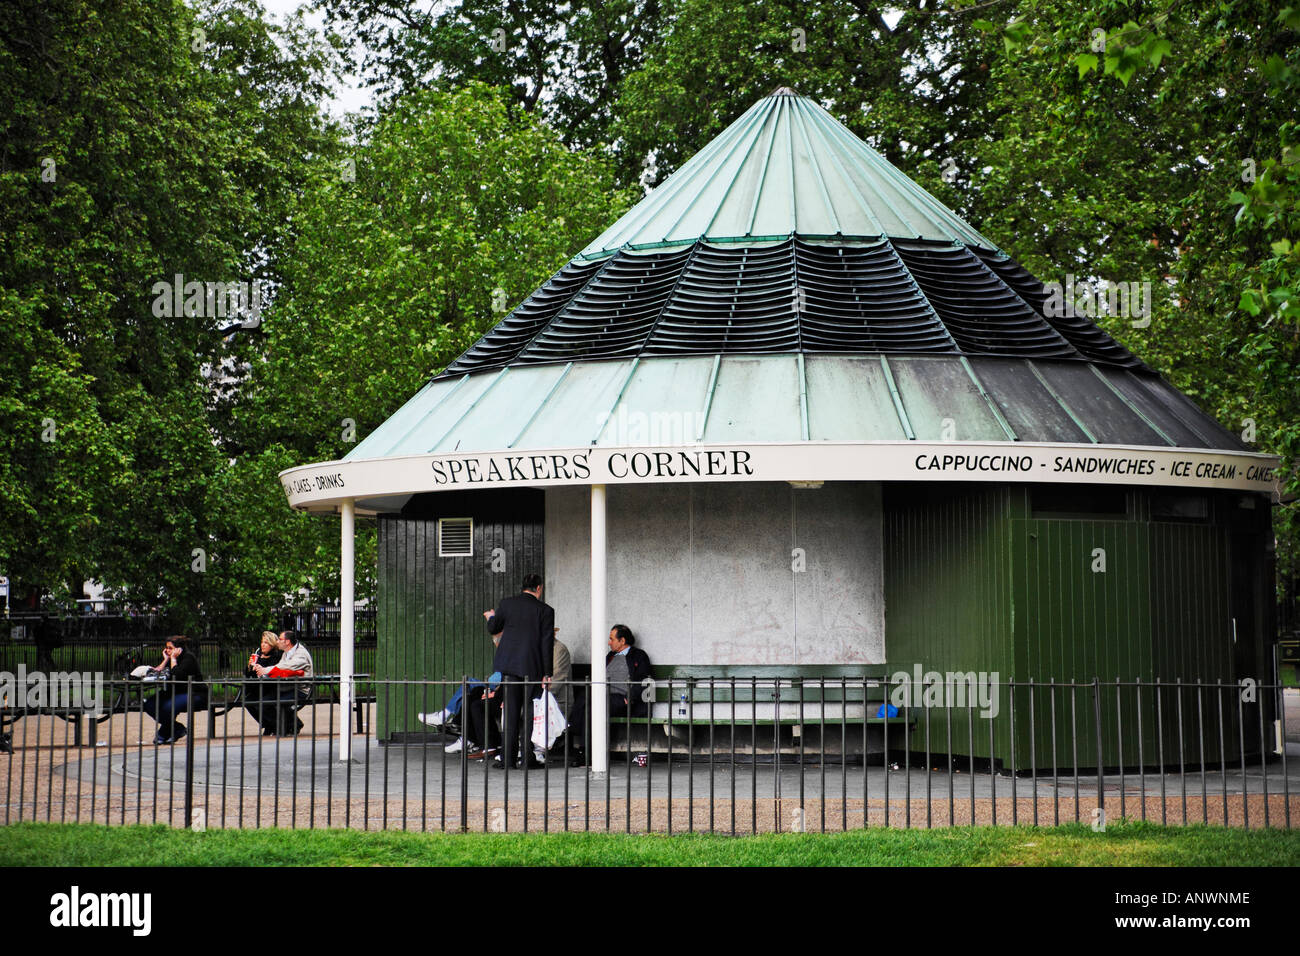 Speaker's Corner, Hyde Park, London, England Stock Photo